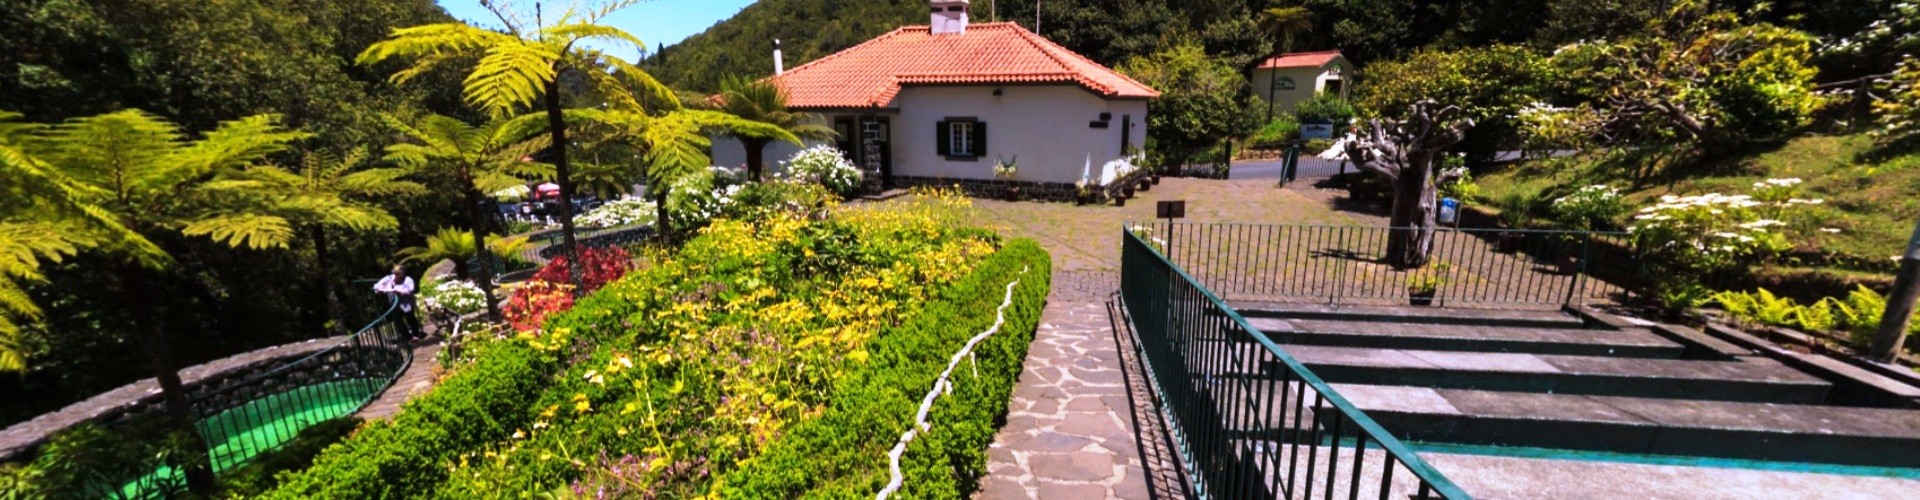 Parque Florestal do Ribeiro Frio Forest Park, Madeira